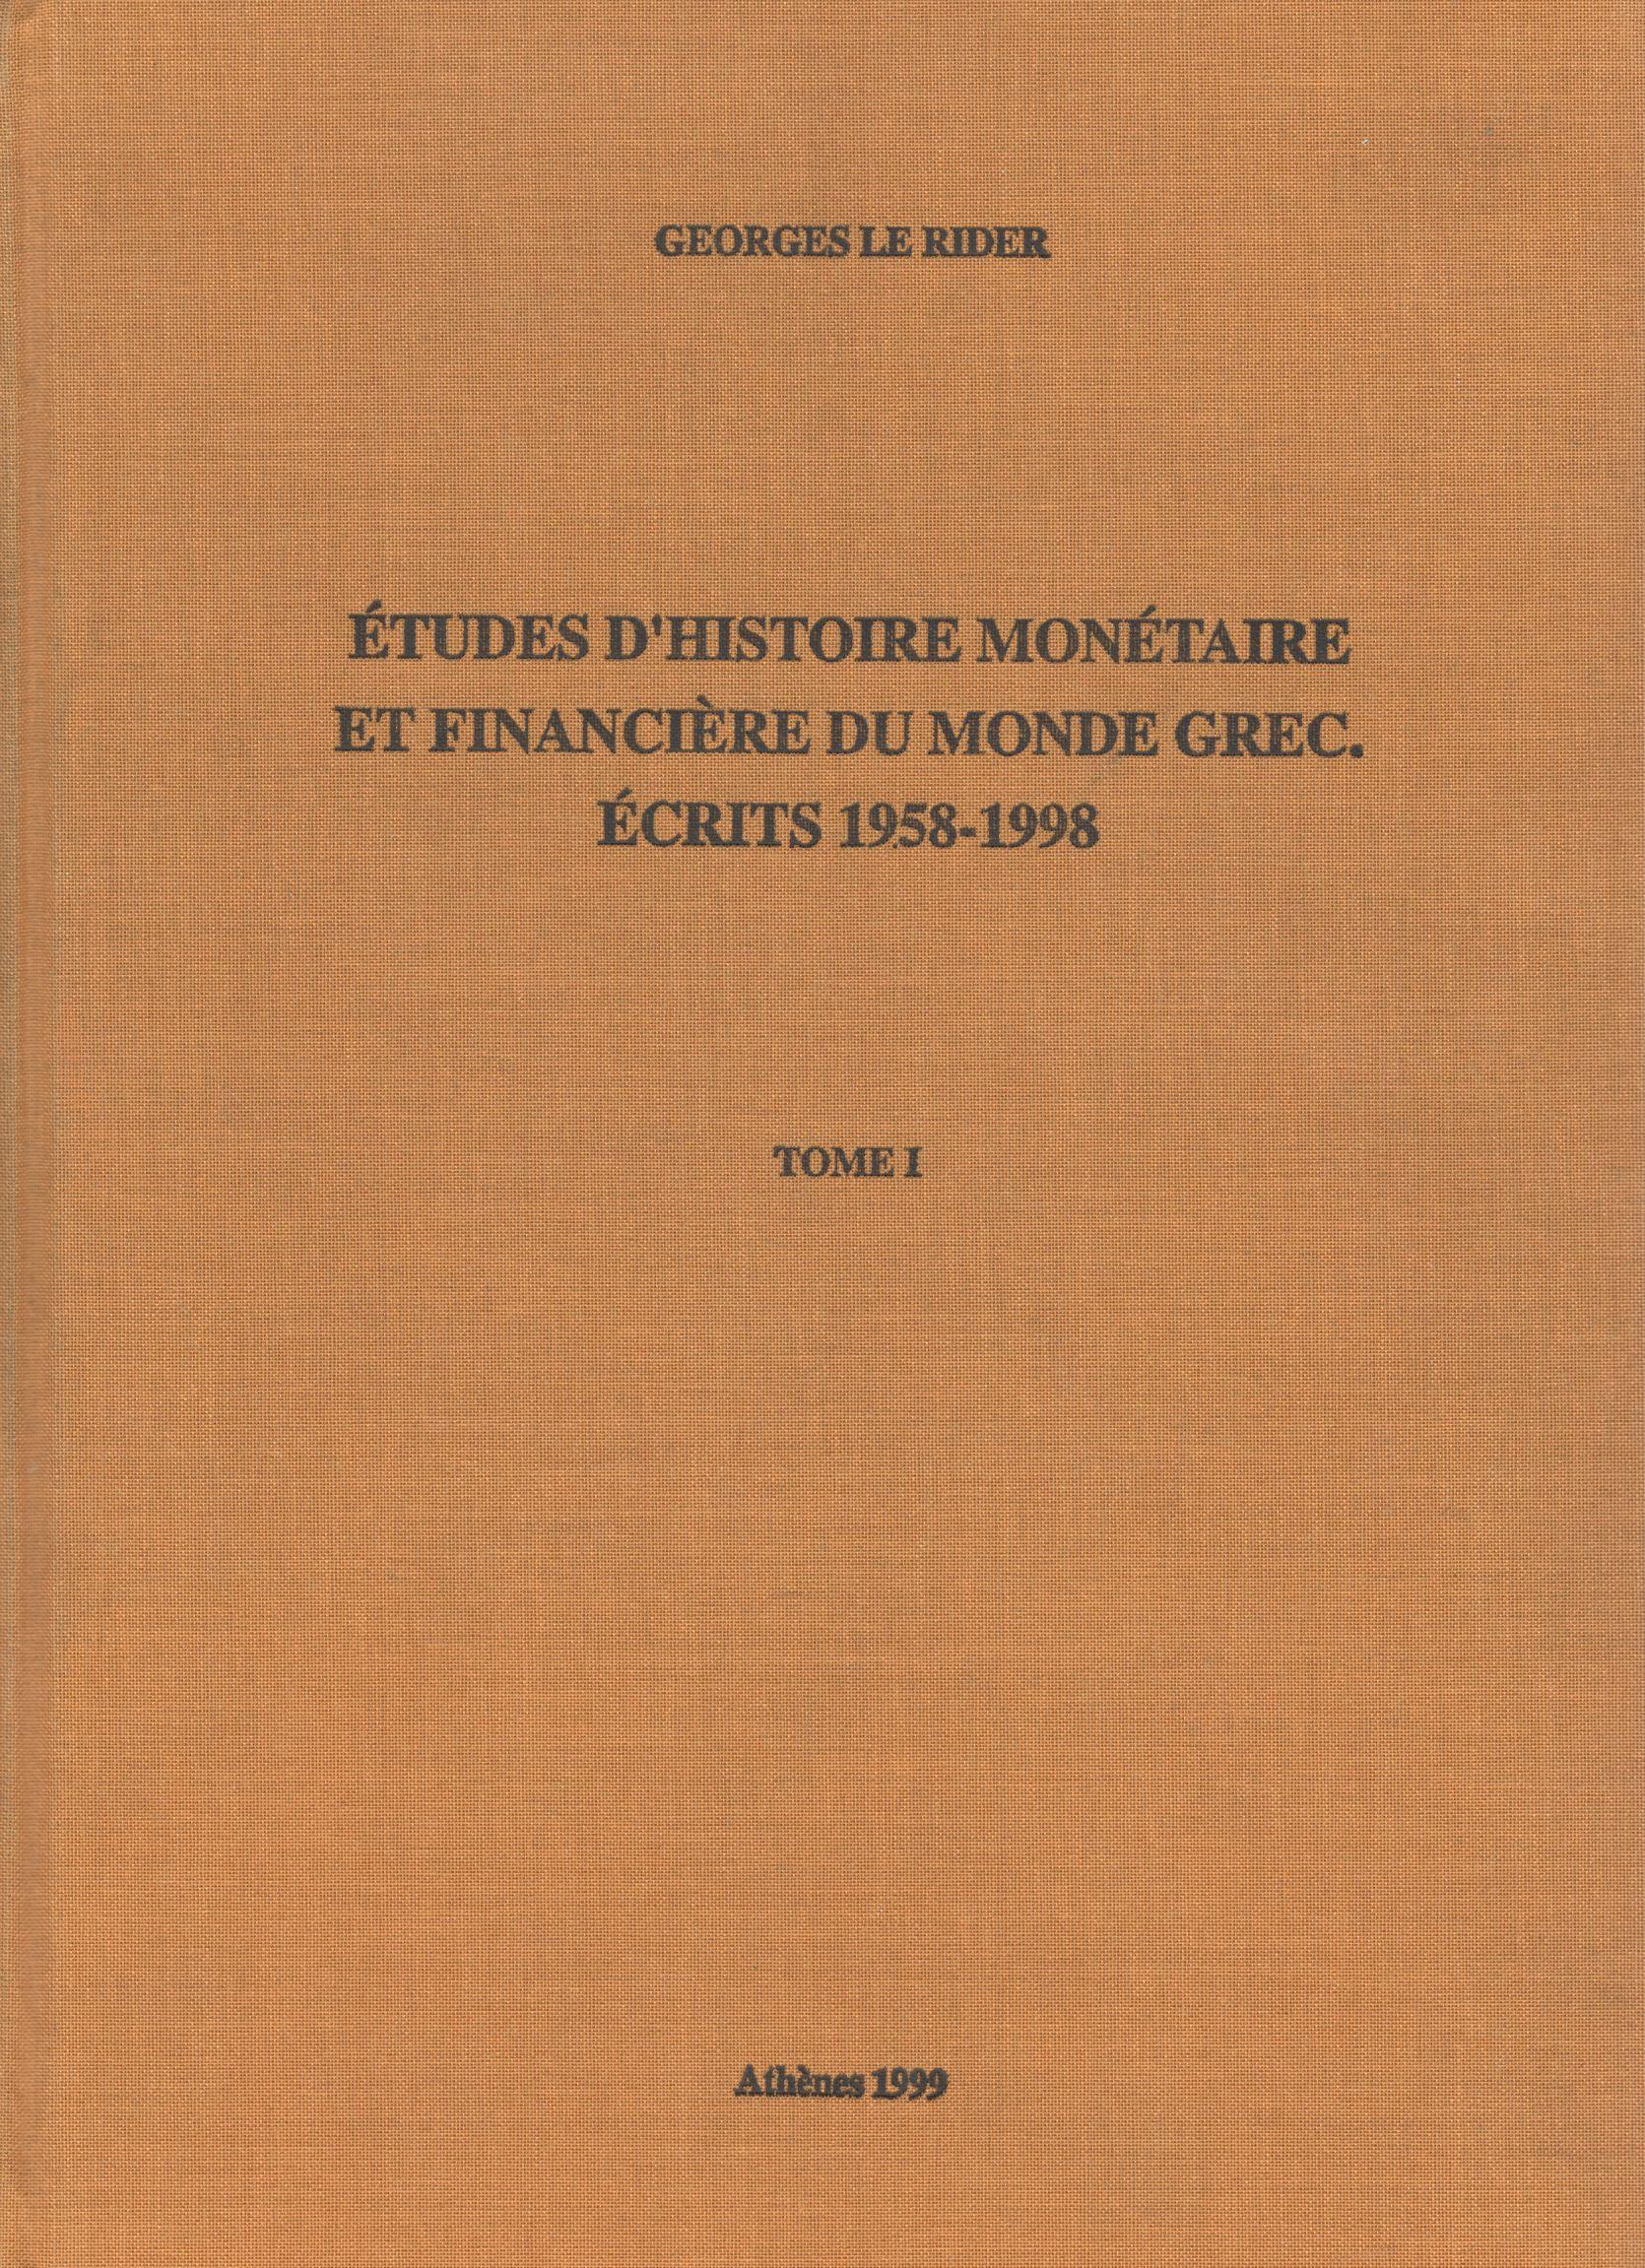 ETUDES D'HISTOIREMONETAIRE ET FINANCIERE DU MONDE GREC: ECRITS 1958-1998 (TOME I-III)